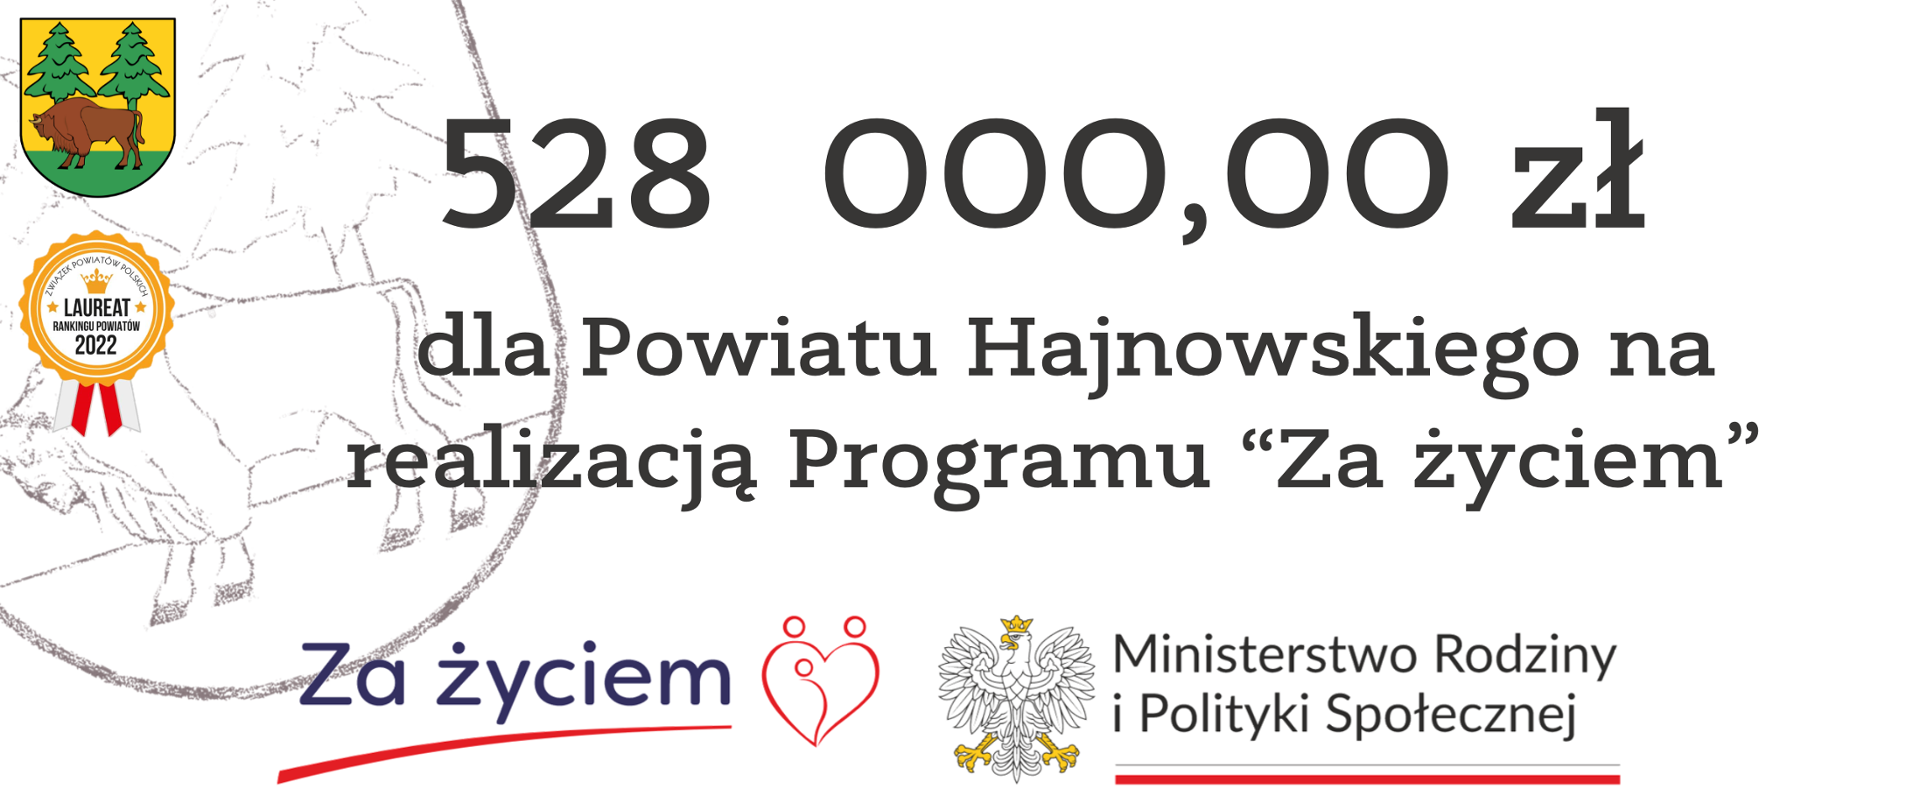 528 000,00 zł dla Powiatu Hajnowskiego na realizację Programu "Za życiem". U dołu logo "Za życiem" i Ministerstwa Rodziny i Polityki Społecznej